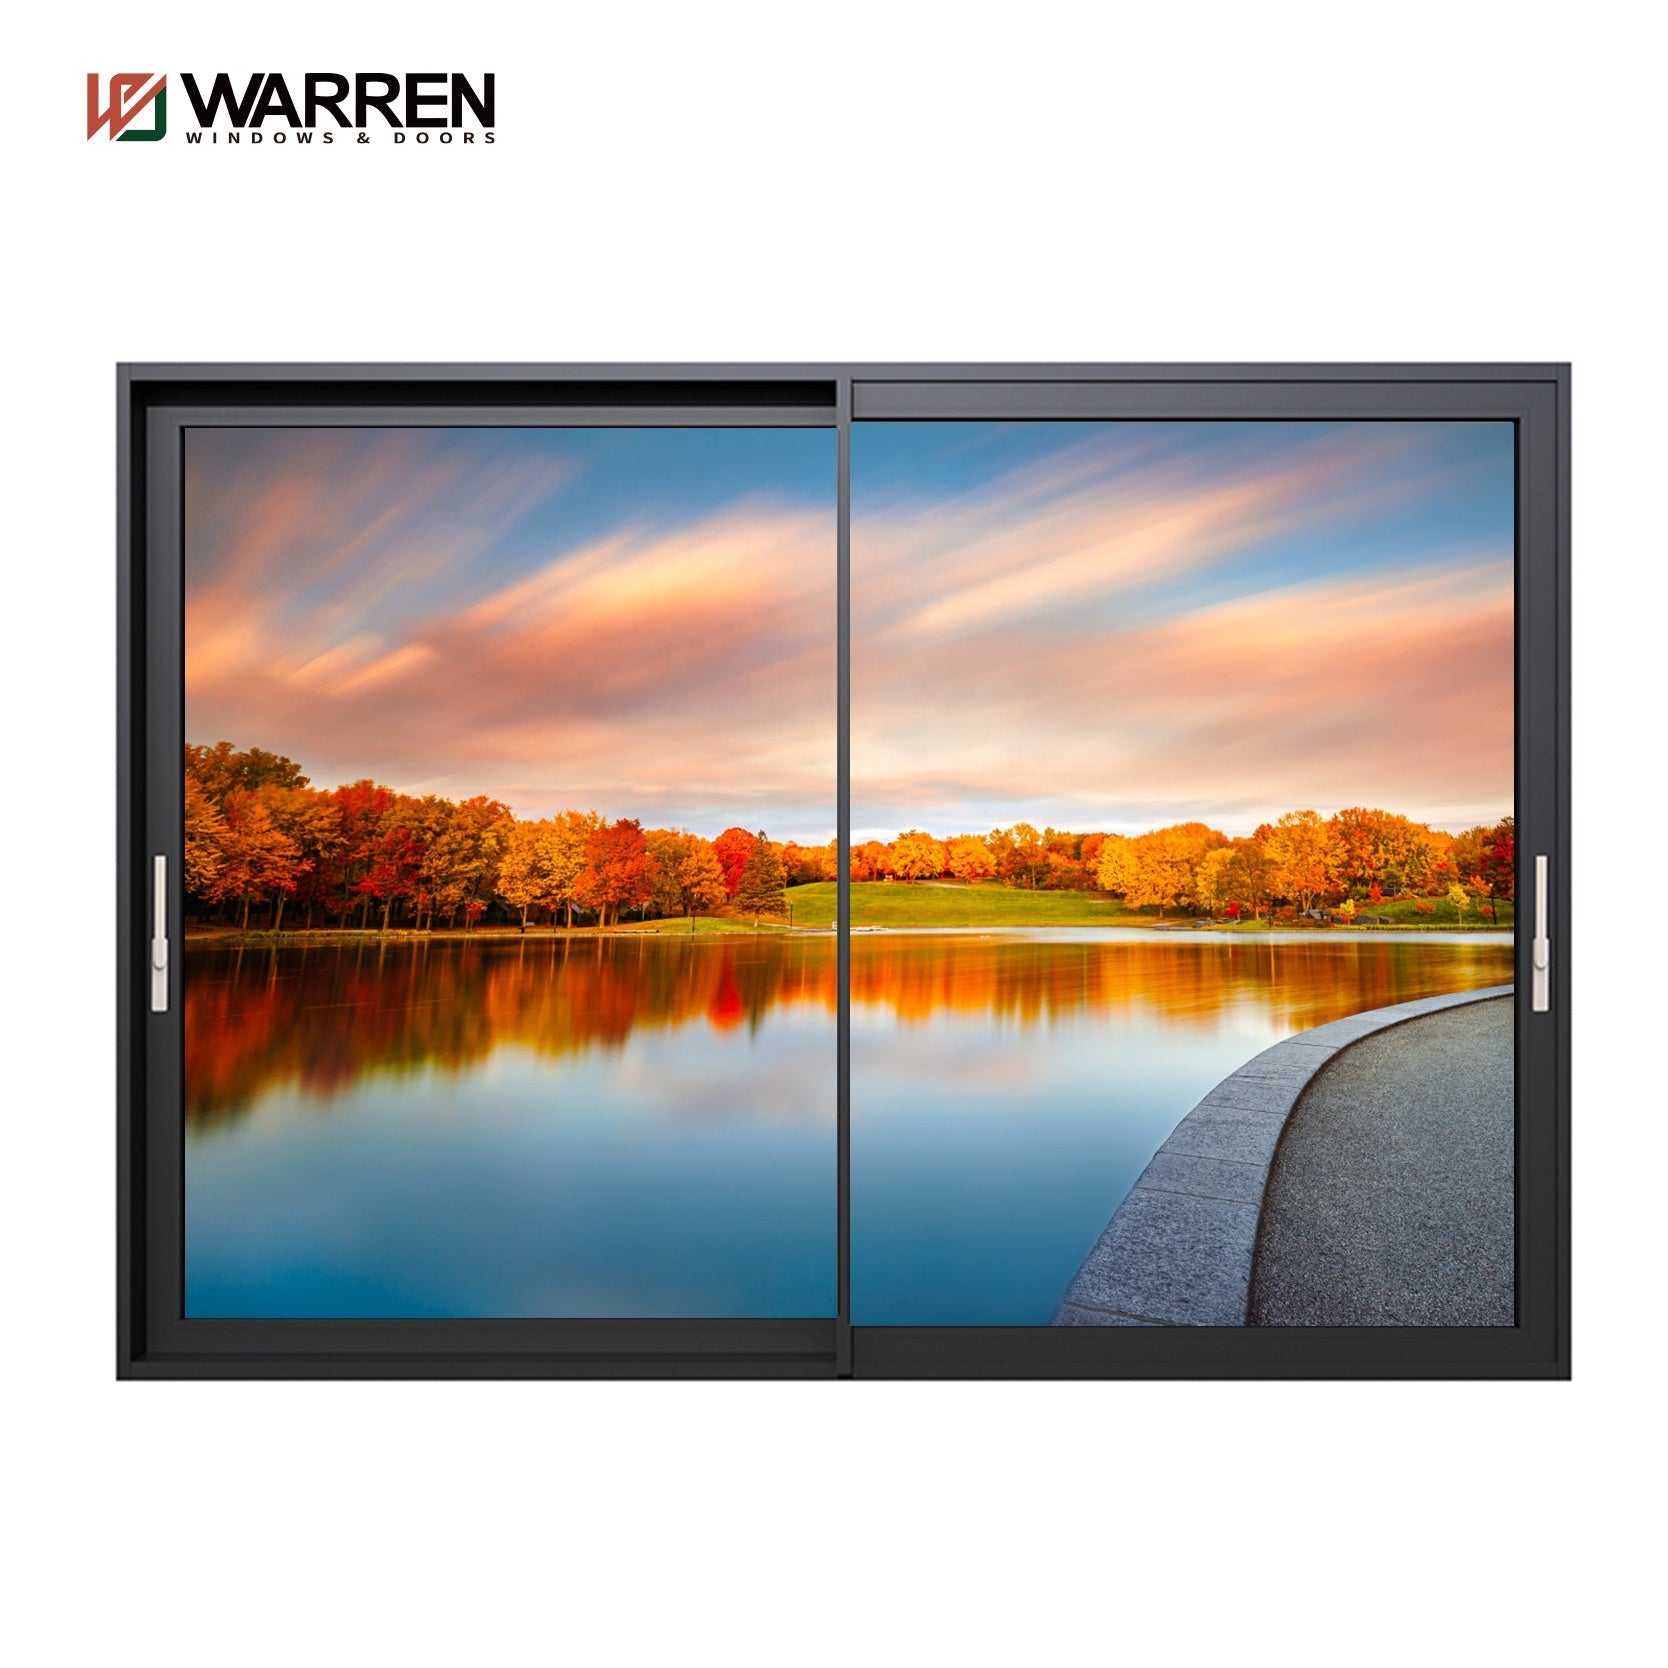 Warren 96 Tall Sliding Glass Door Sliding Patio Screen Door 48 x 96 Price